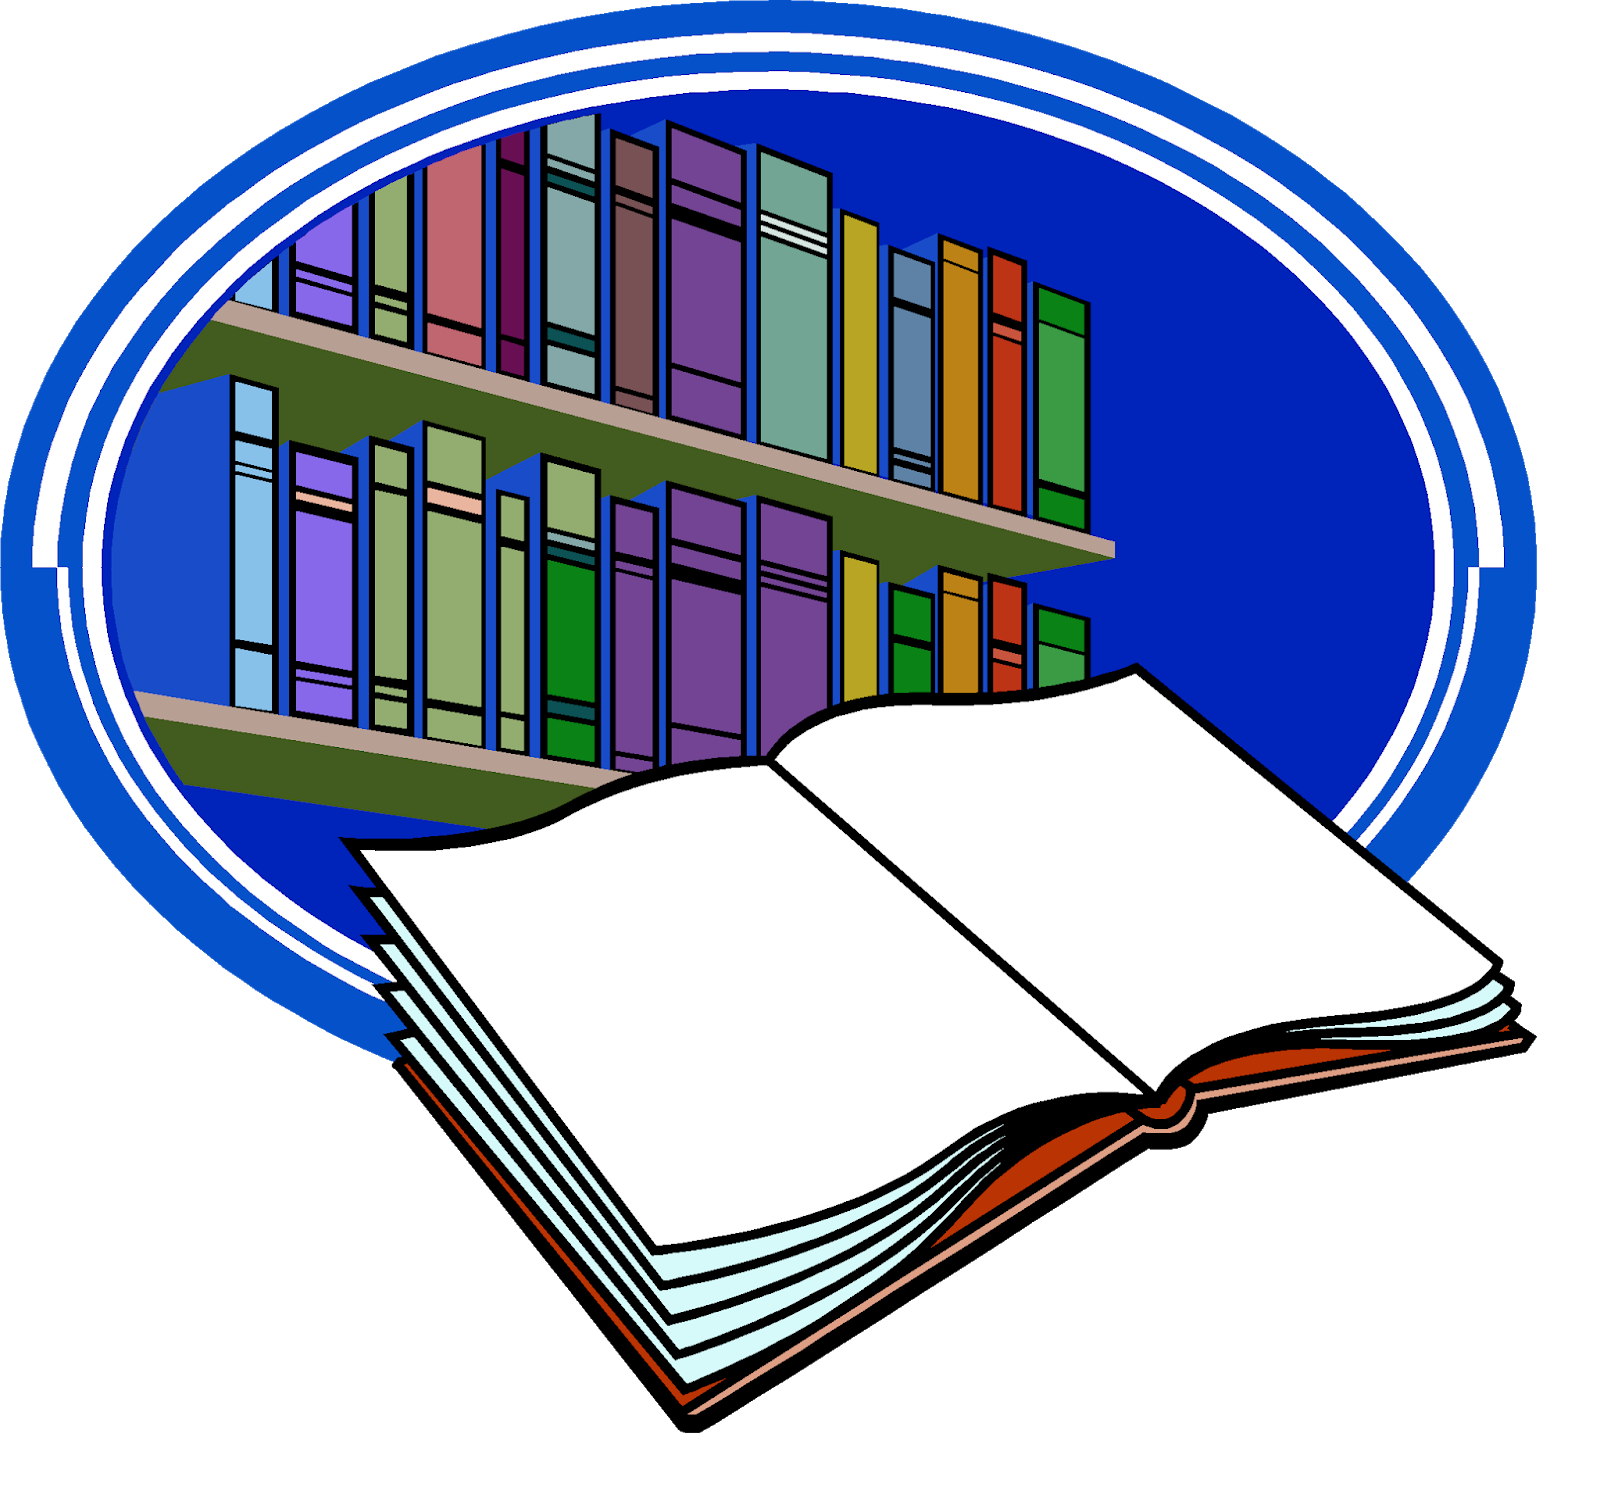 Логотип библиотеки. Библиотека картинки. Библиотека иллюстрация. Логотип школьной библиотеки. Научно методическая библиотека